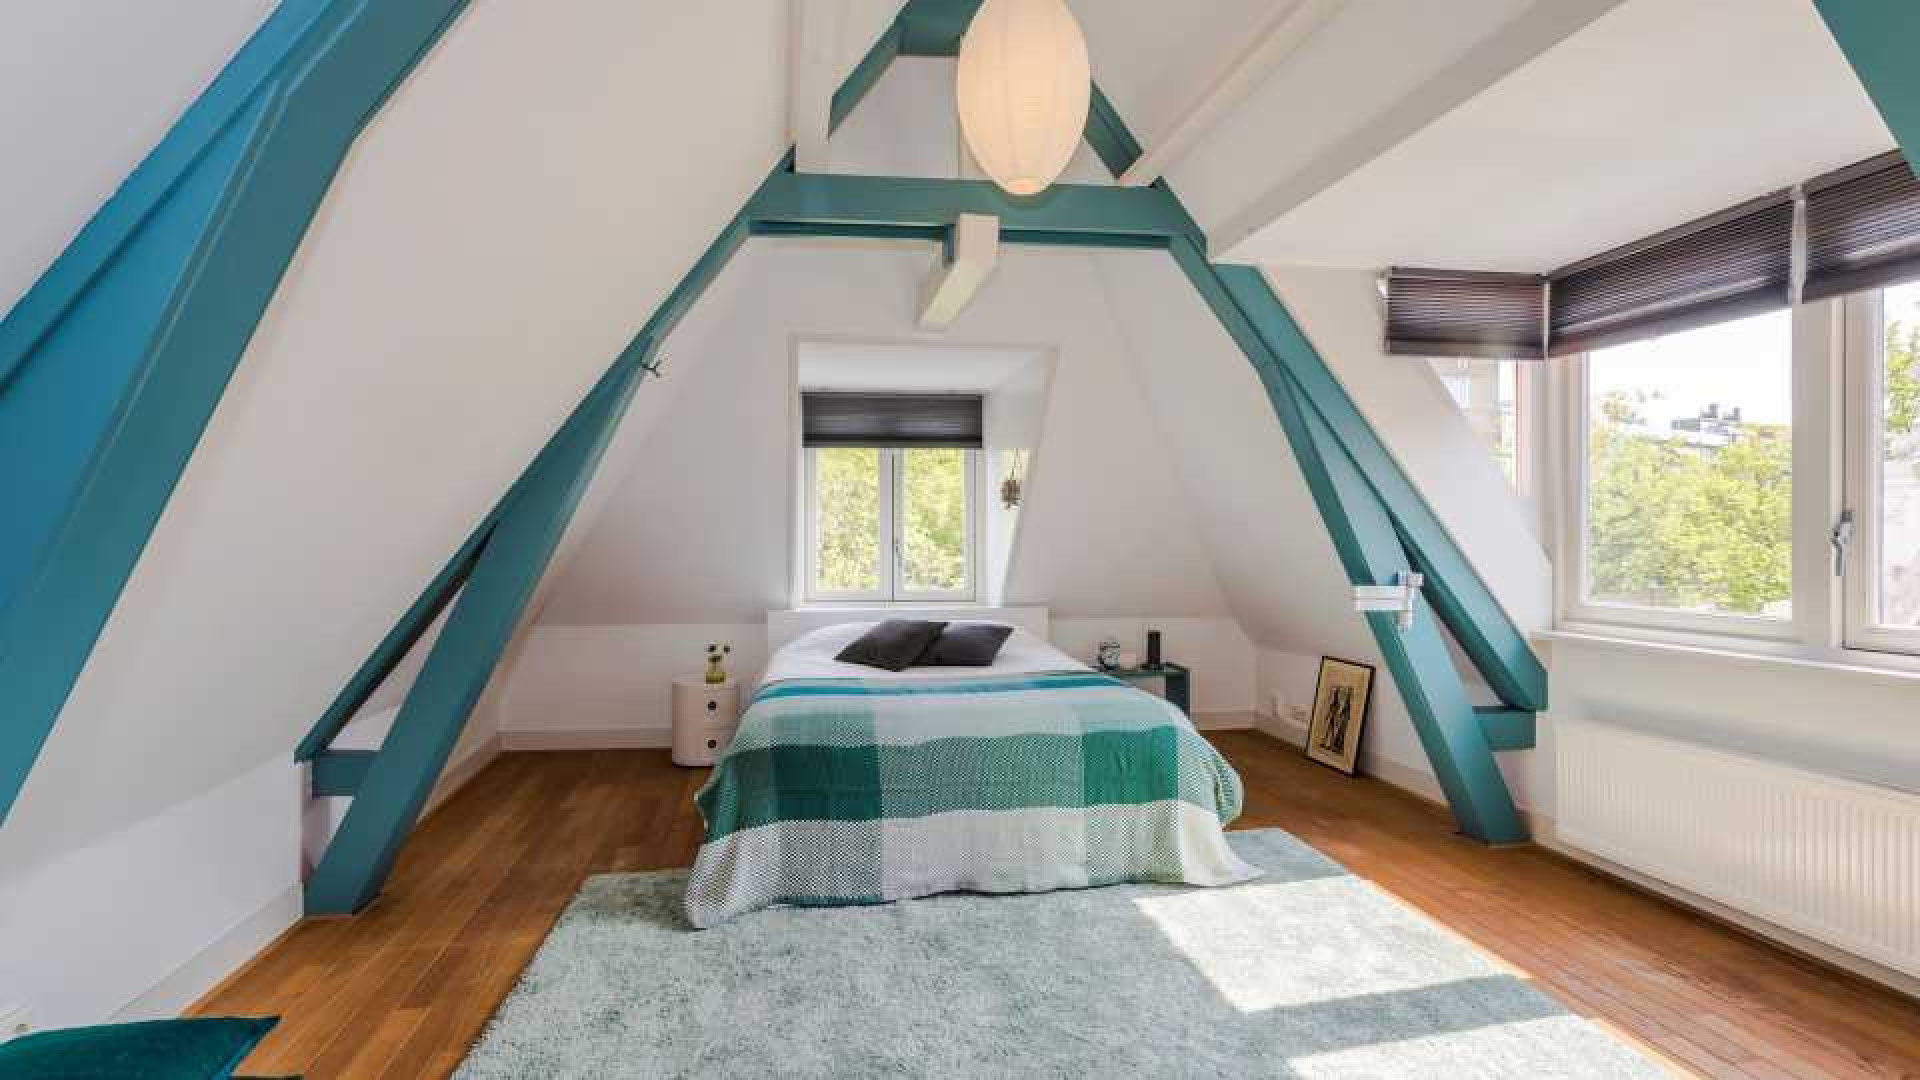 Ex Jiskefet acteur Kees Prins verkoopt zijn Amsterdamse huis met meer dan 1 miljoen euro winst! Zie foto's 14